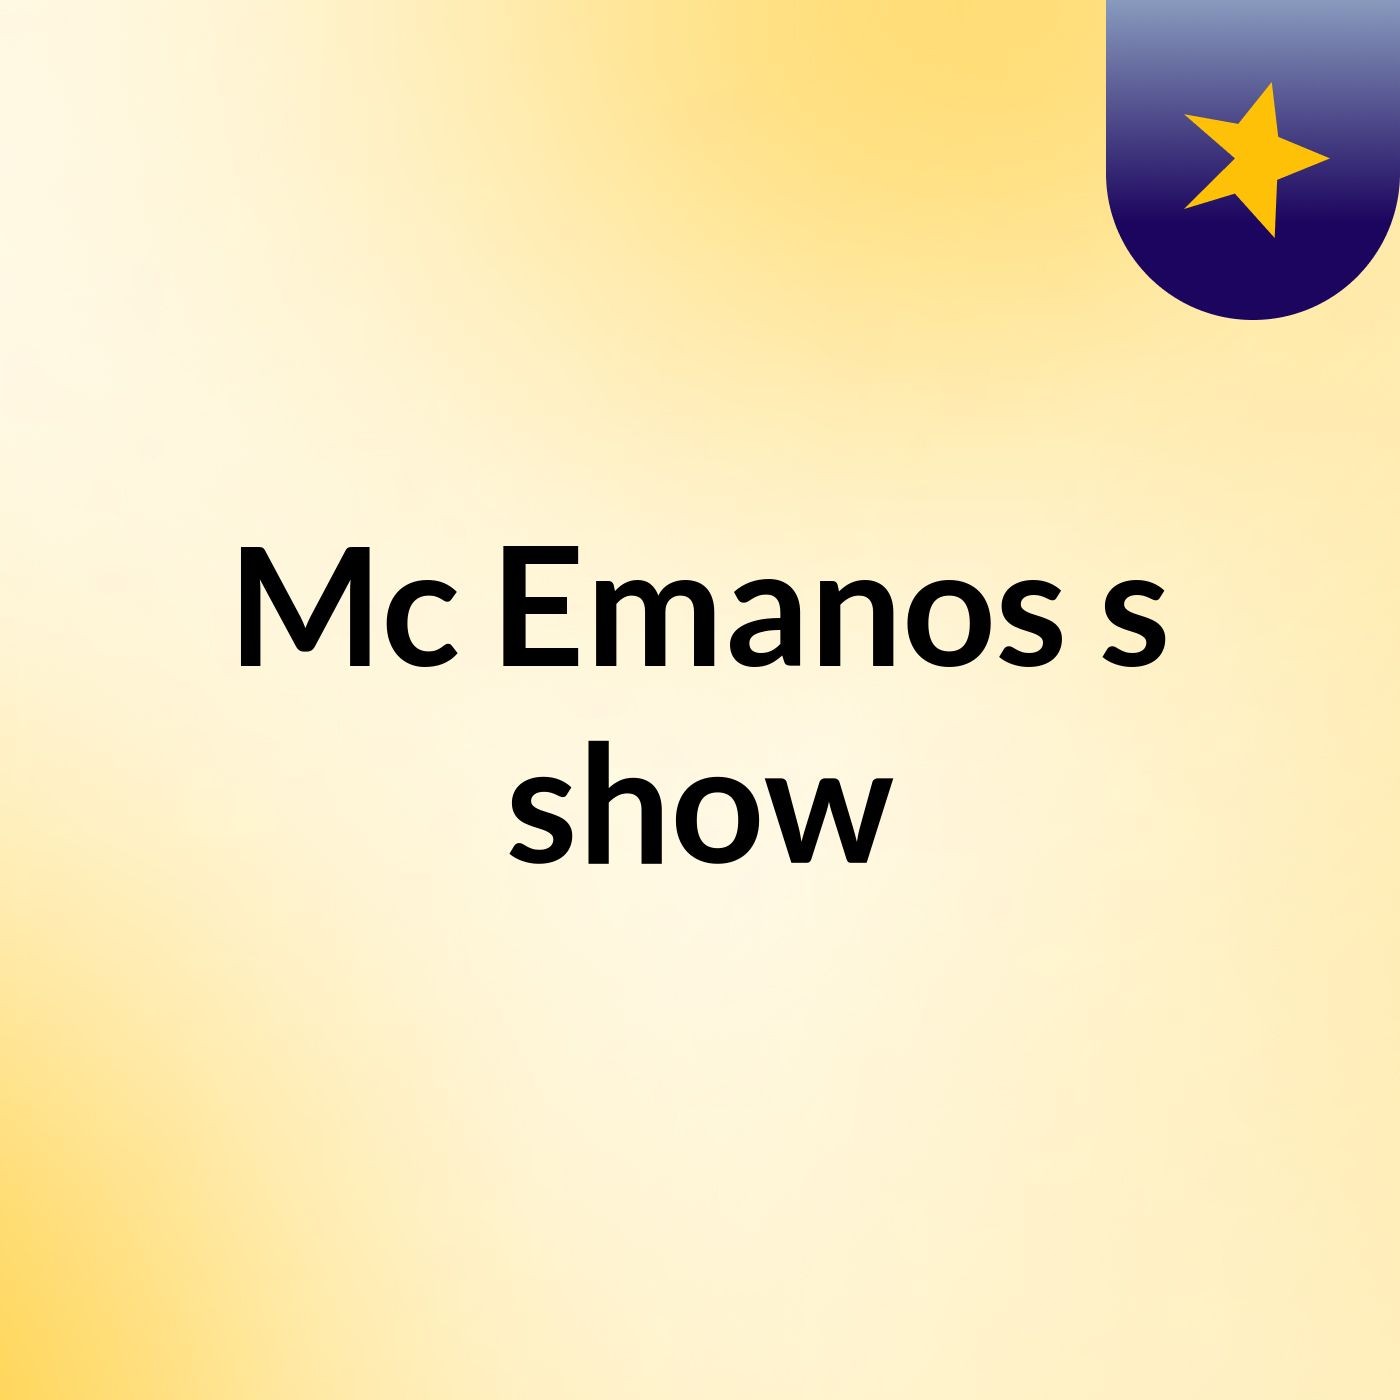 Mc Emanos's show